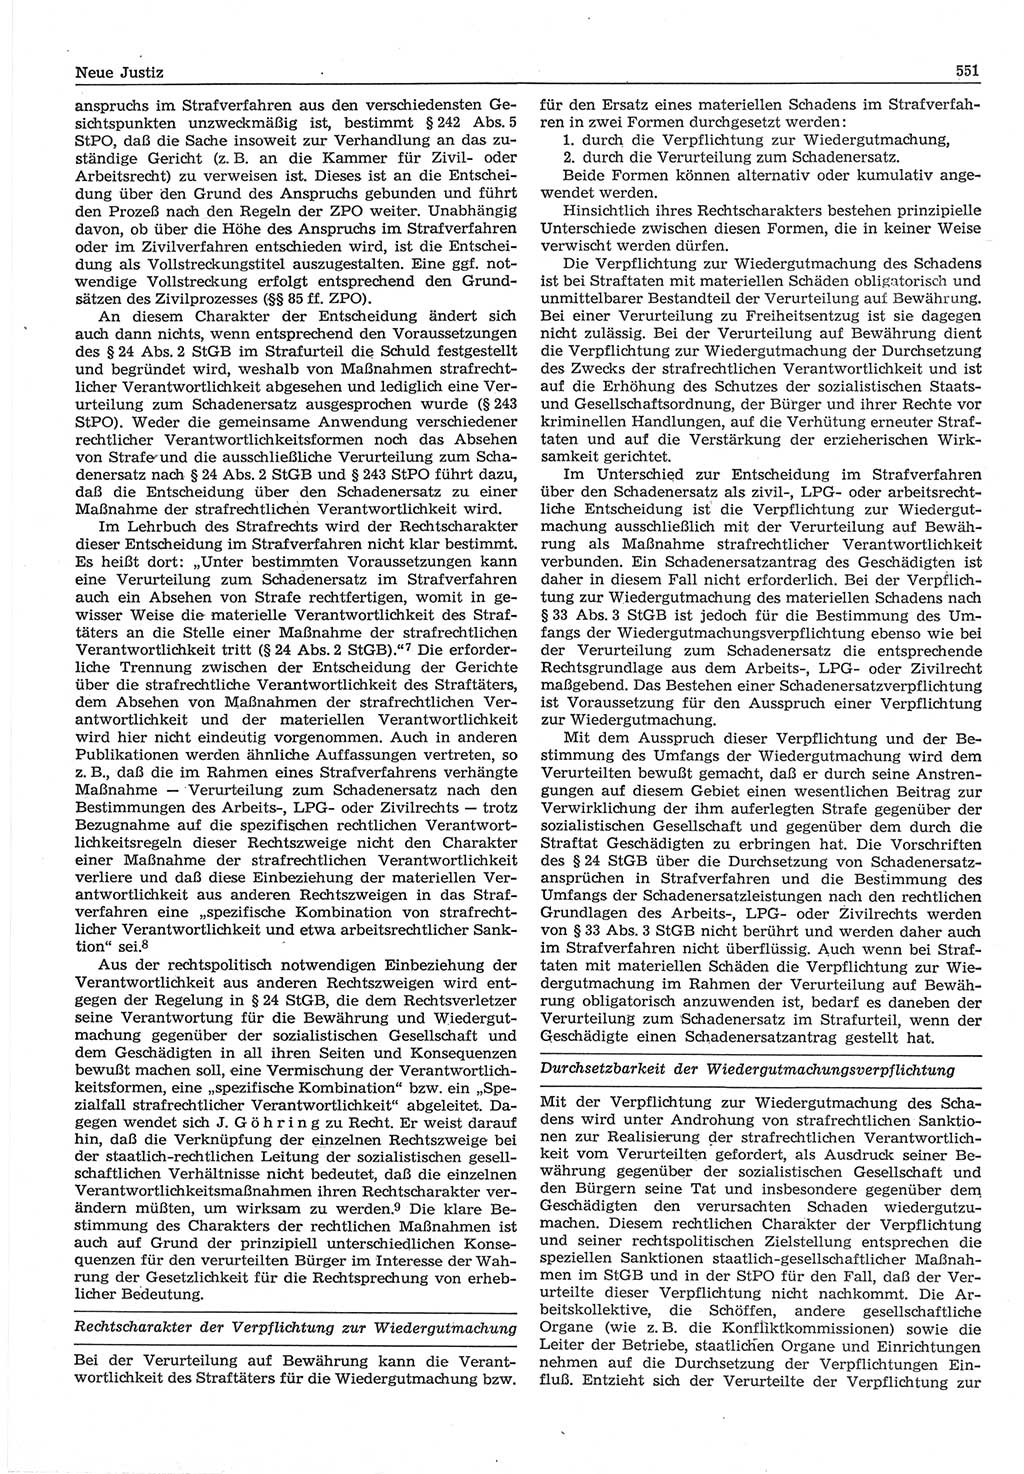 Neue Justiz (NJ), Zeitschrift für Recht und Rechtswissenschaft-Zeitschrift, sozialistisches Recht und Gesetzlichkeit, 31. Jahrgang 1977, Seite 551 (NJ DDR 1977, S. 551)